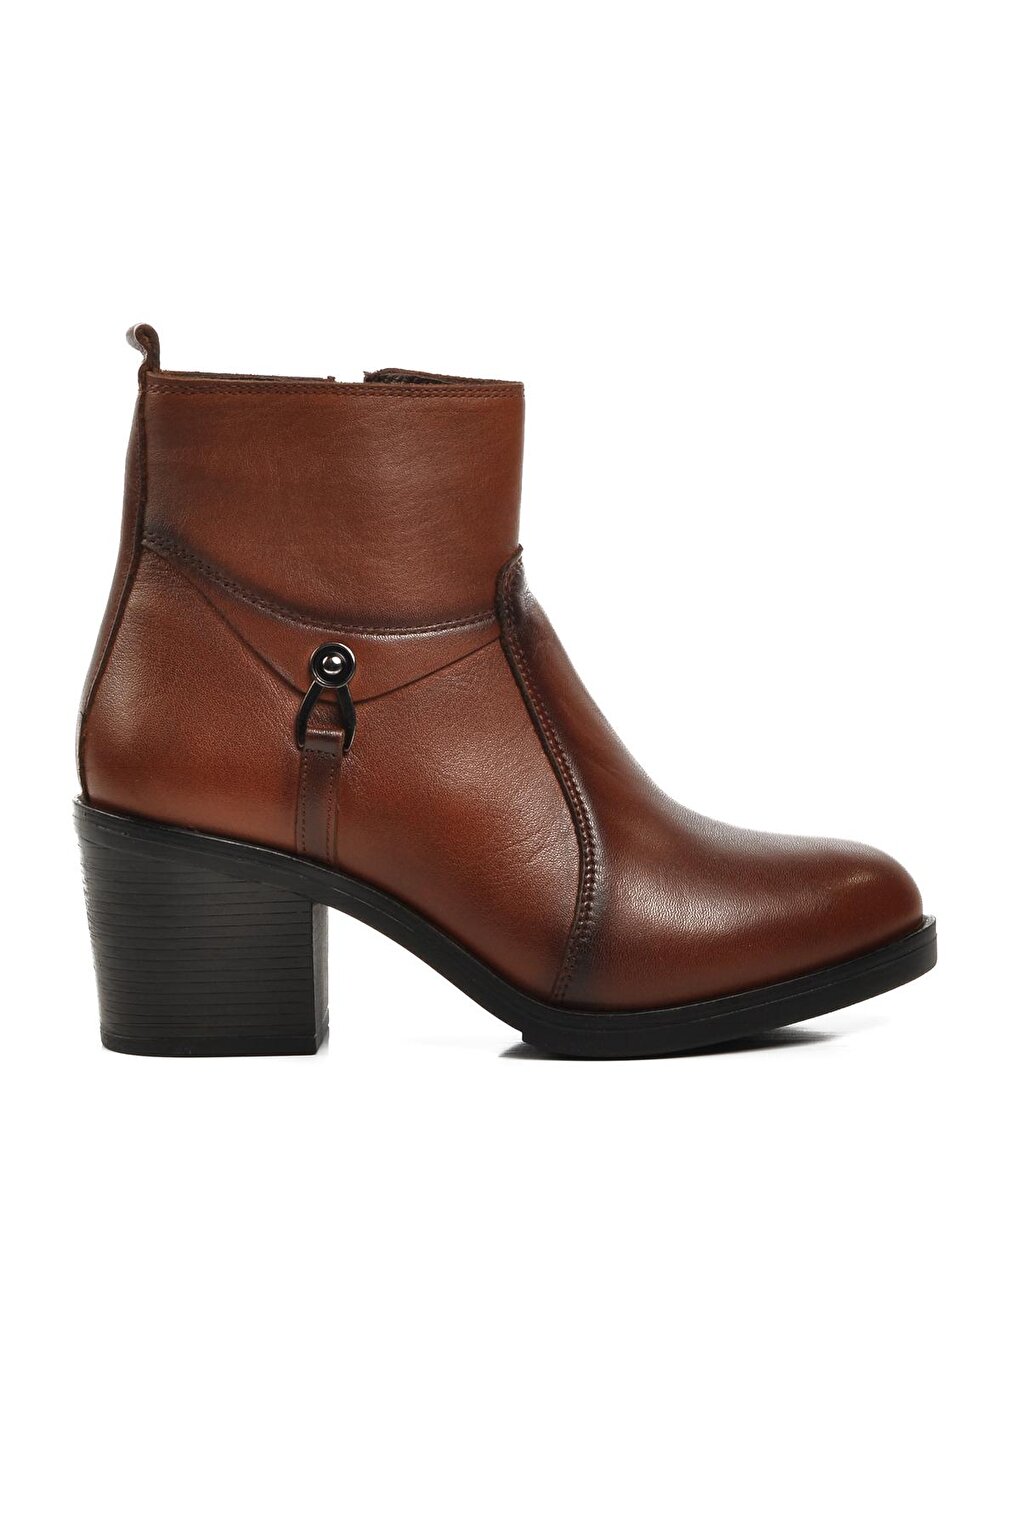 9361 Светло-коричневые женские ботинки из флиса из натуральной кожи Voyager гранит tan brown тан браун 20 мм индия